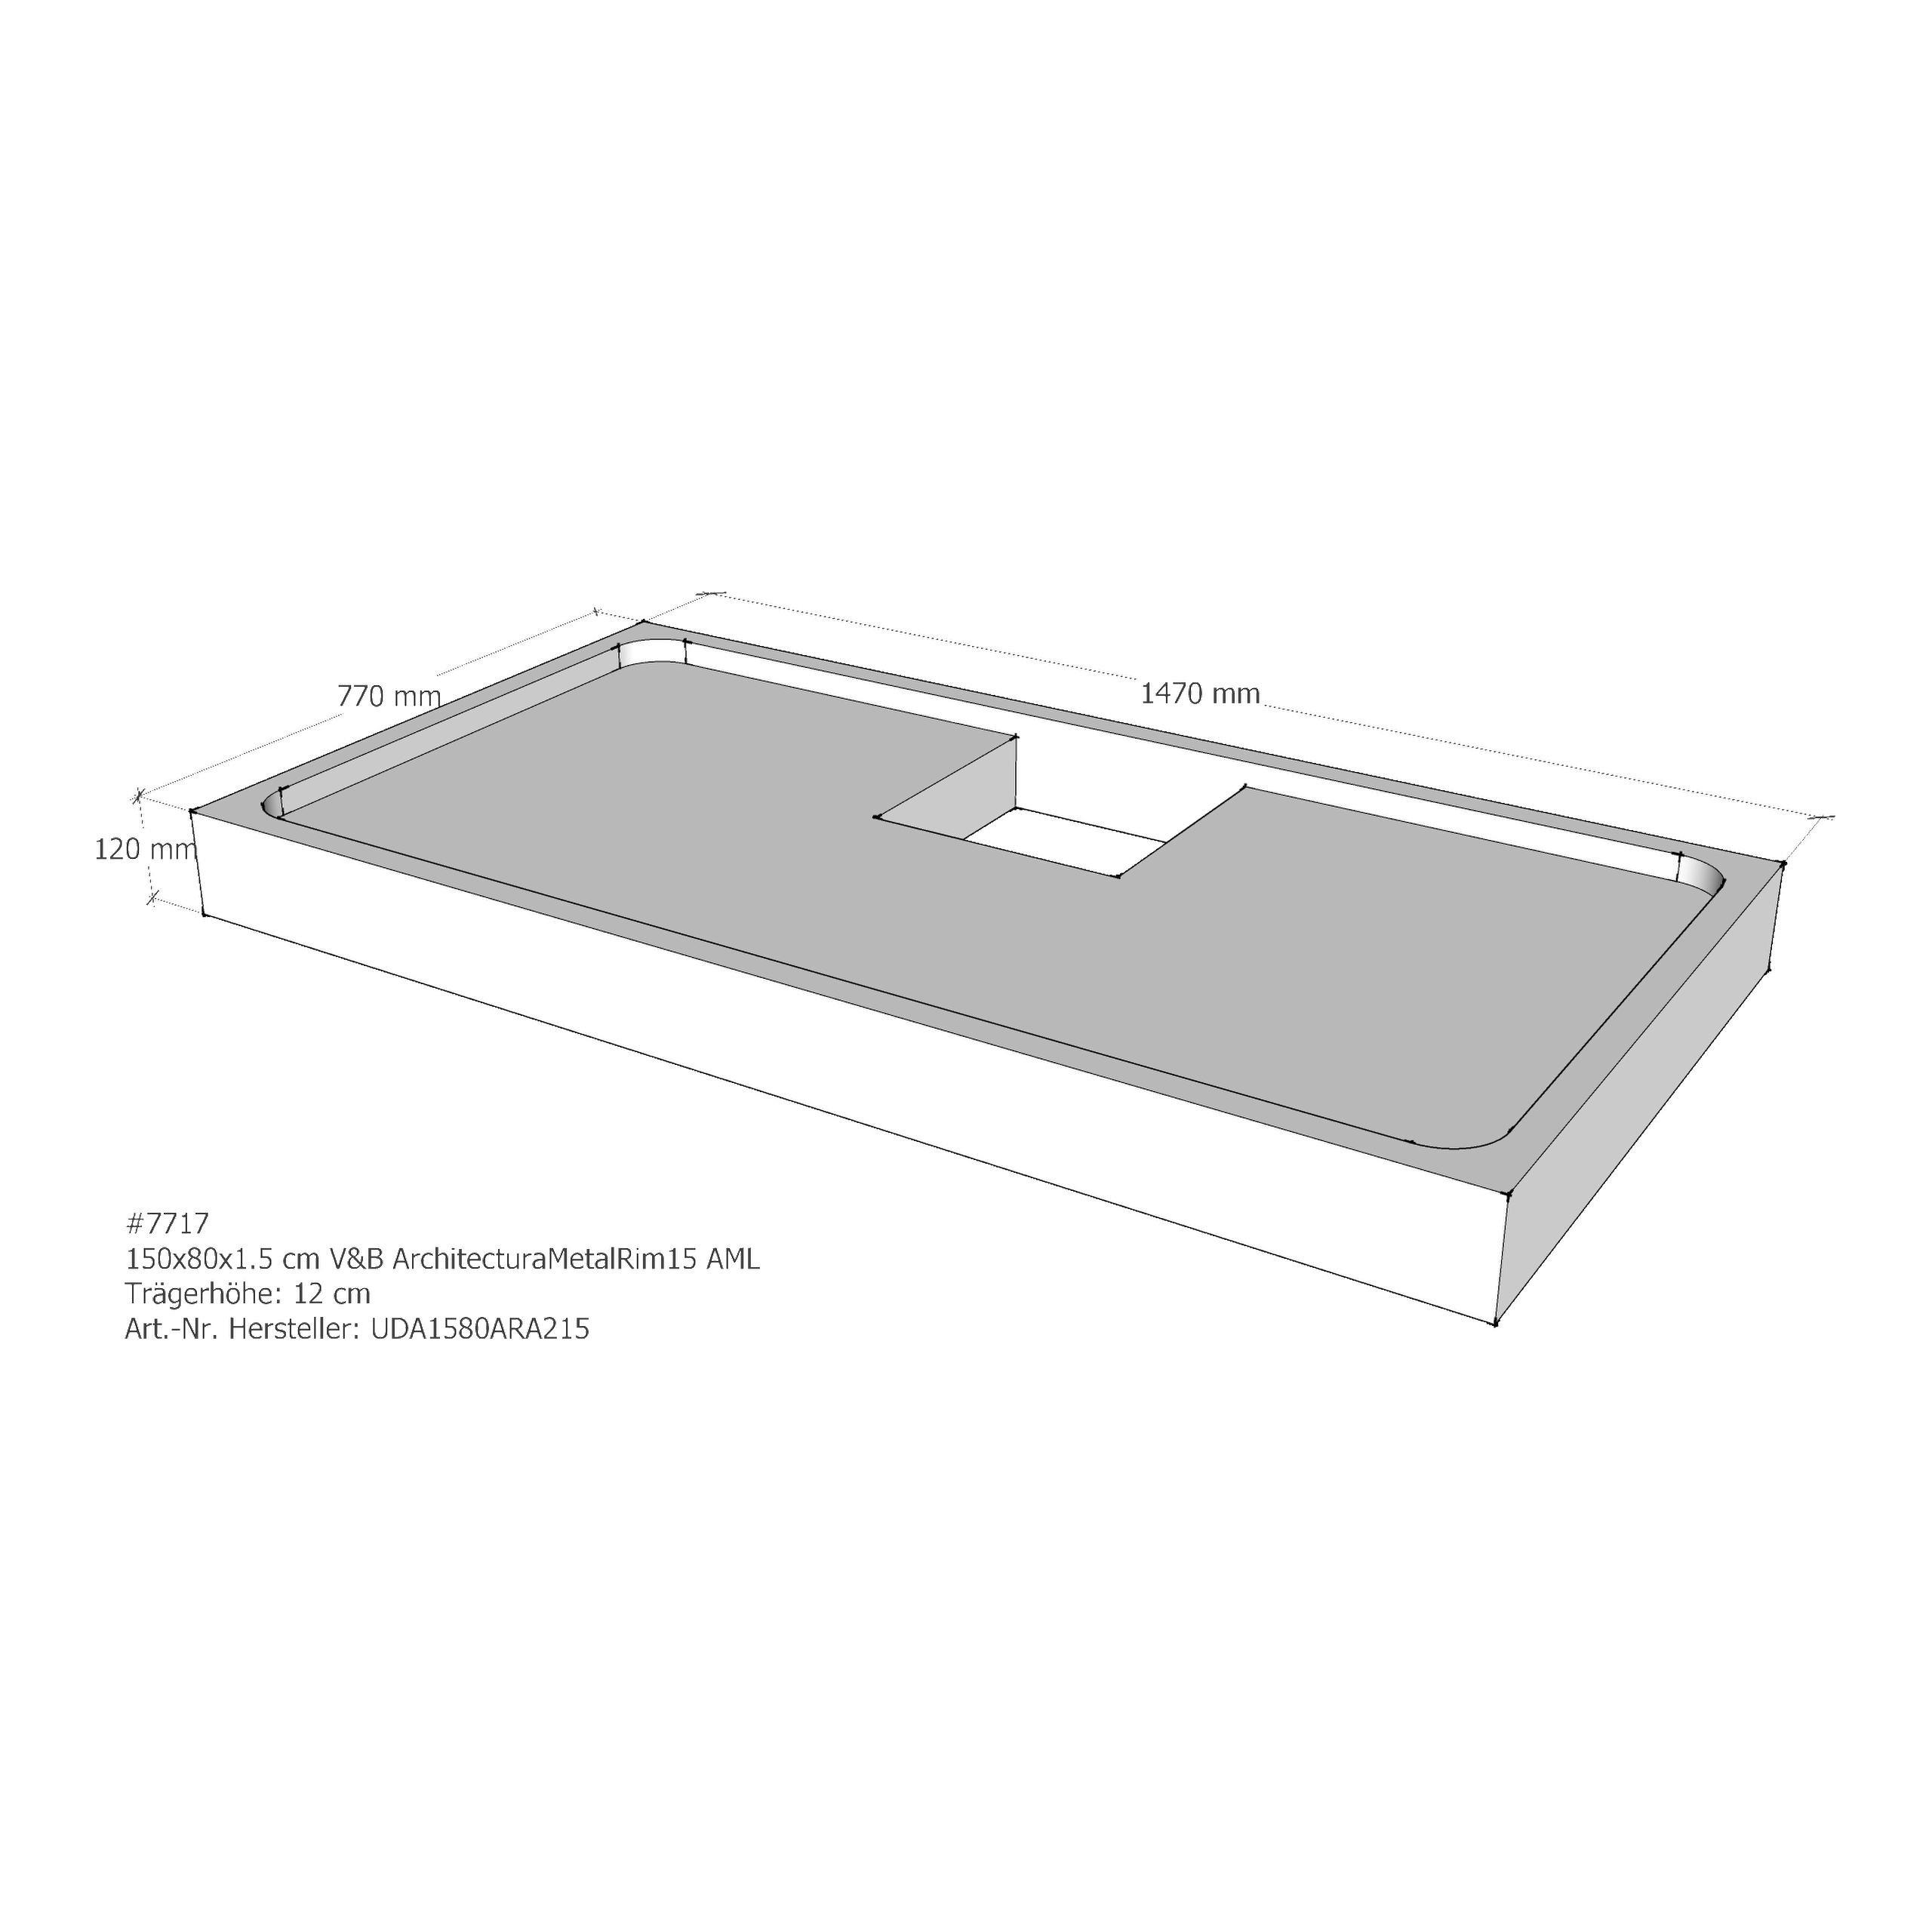 Duschwannenträger für Villeroy & Boch Architectura MetalRim 150 × 80 × 1,5 cm